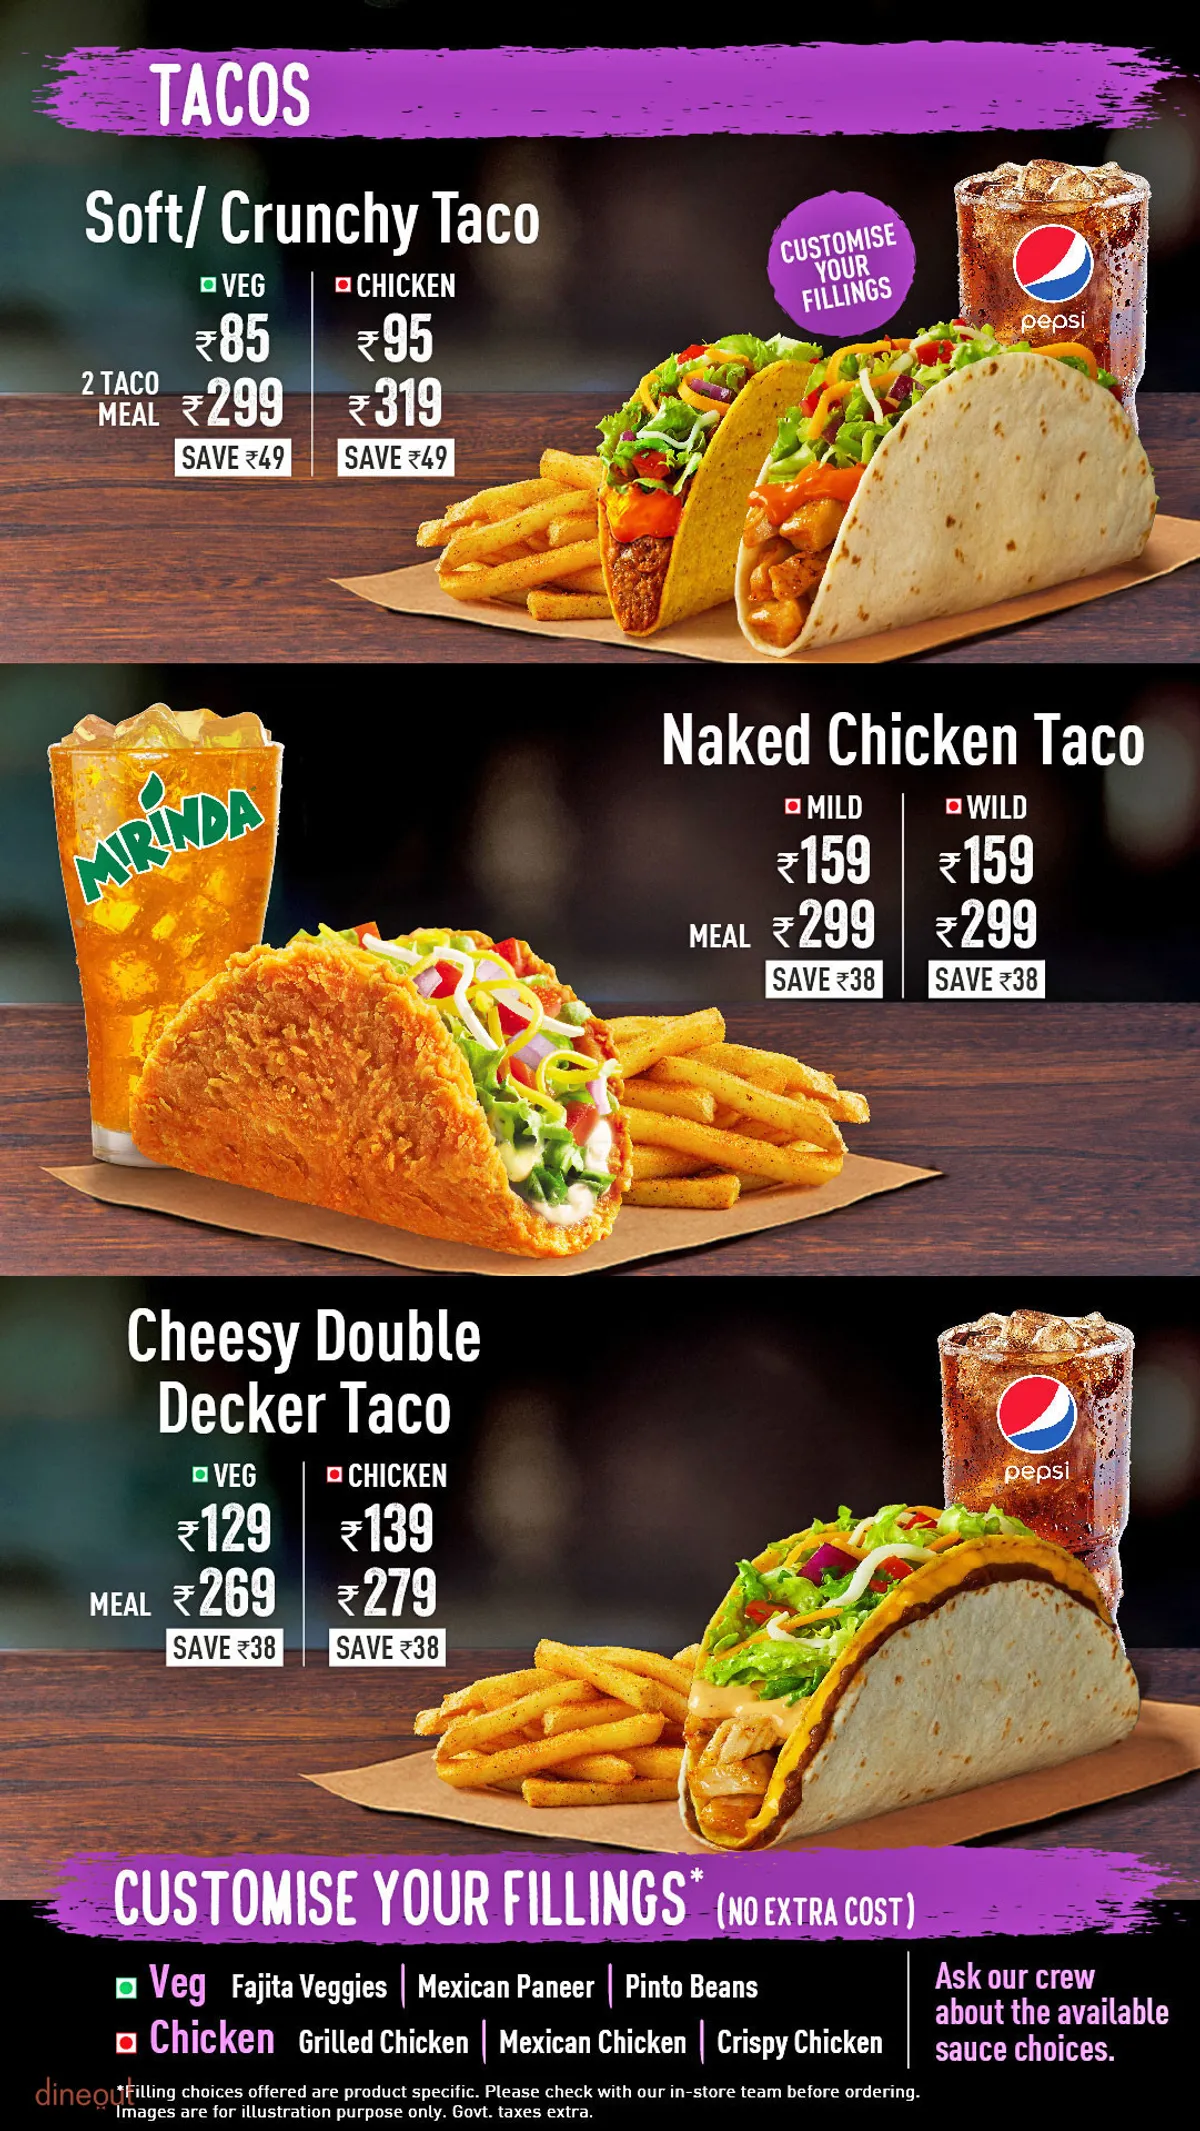 Chi phí nhượng quyền, lợi nhuận và cơ hội nhượng quyền Taco Bell